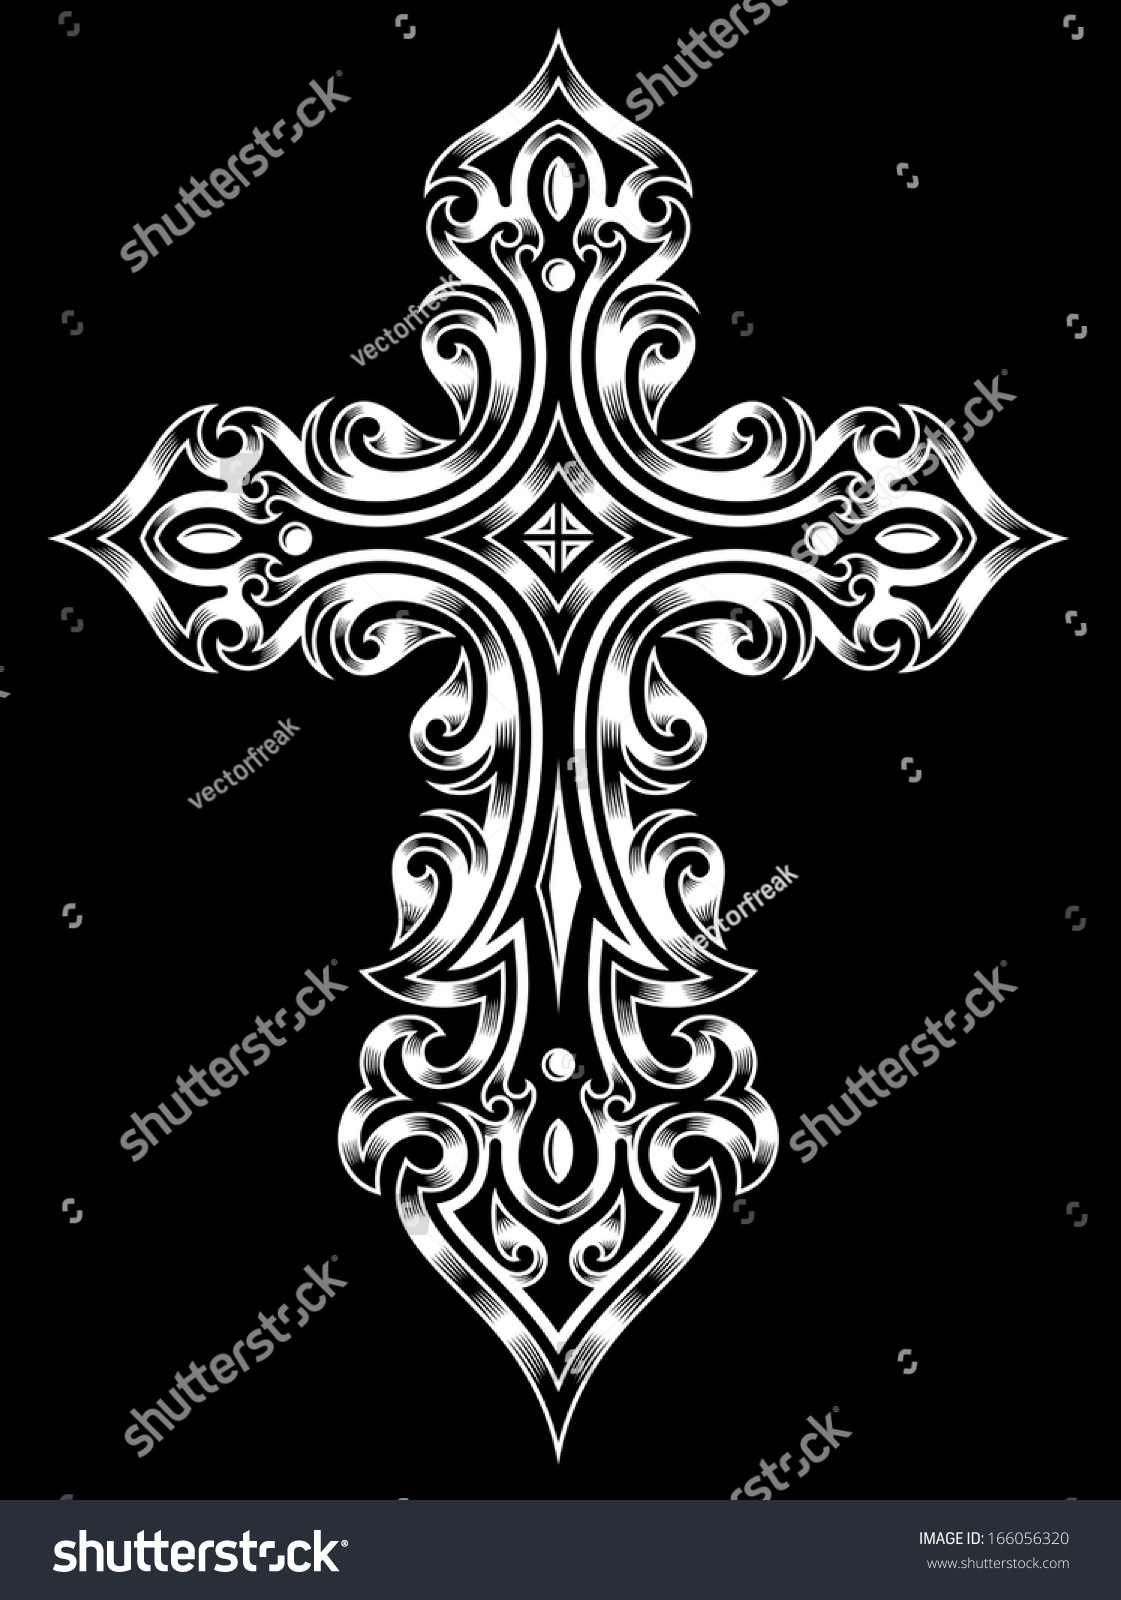 ゴシック十字架 のベクター画像素材 ロイヤリティフリー